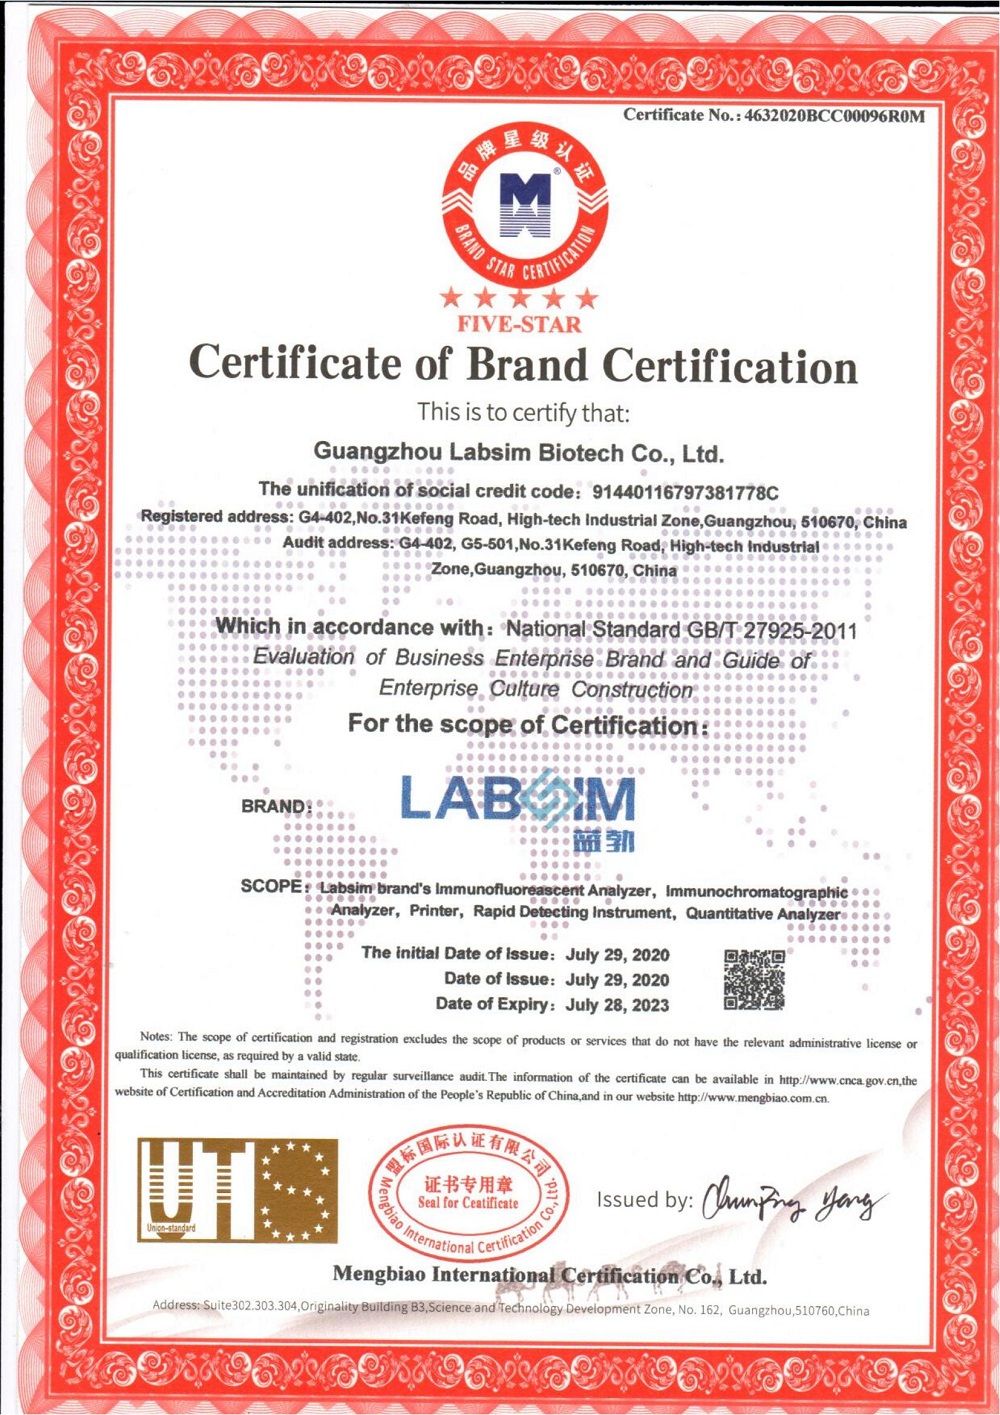 4.16-2, brand certification EN (5 stars).jpg